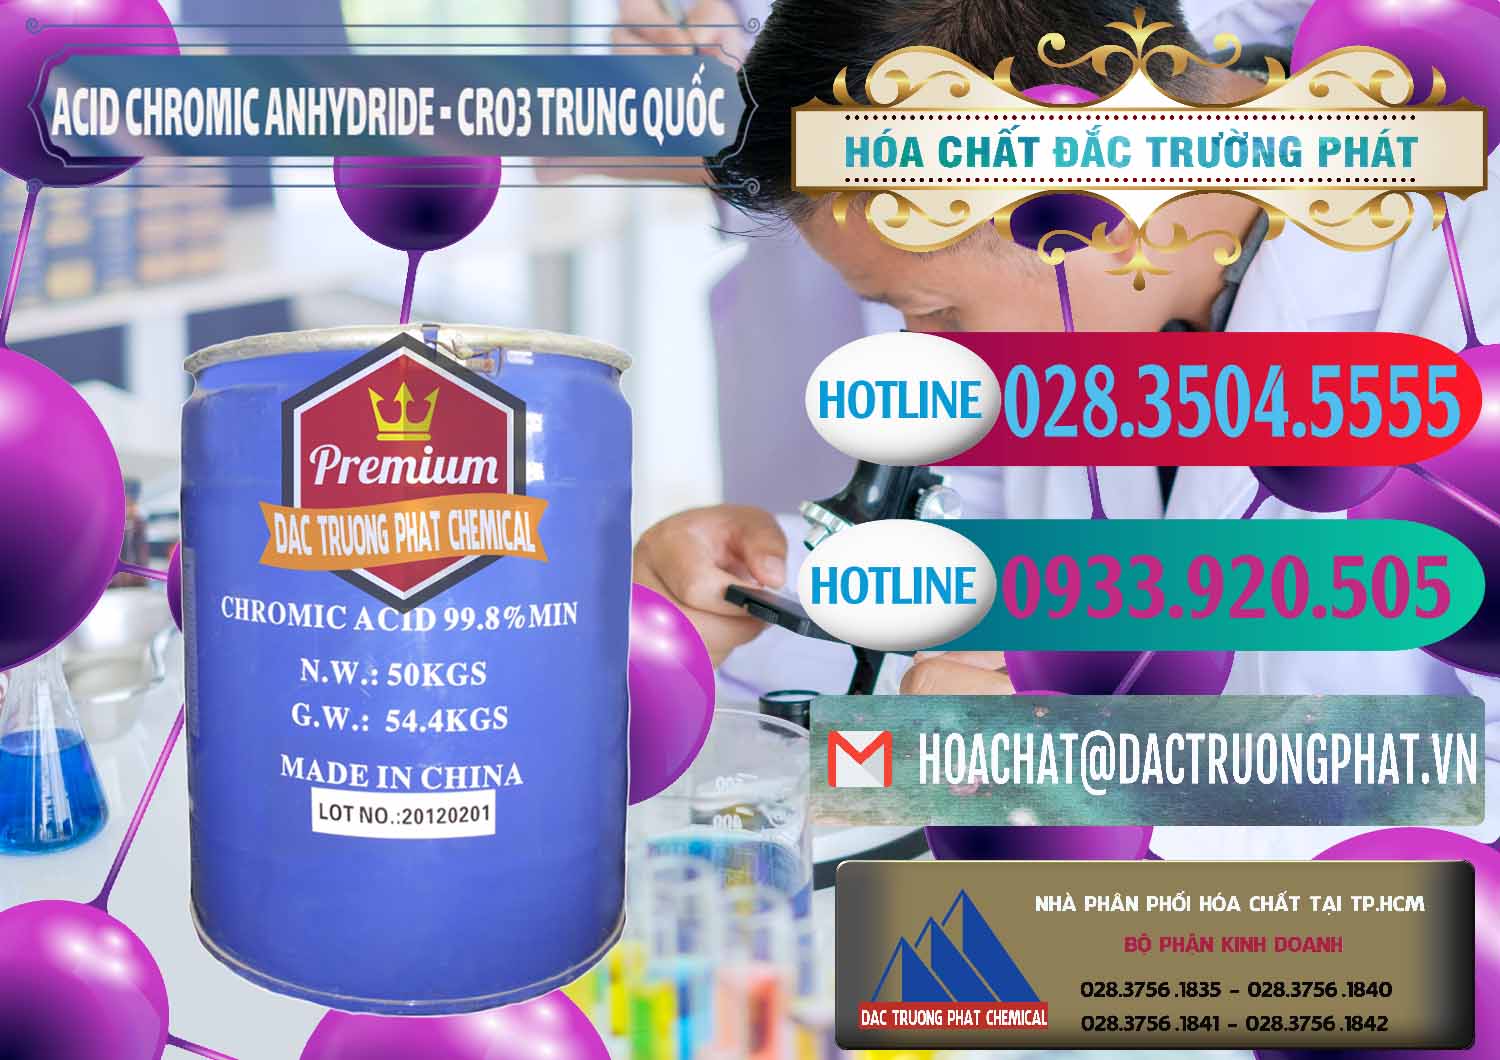 Đơn vị cung ứng _ bán Acid Chromic Anhydride - Cromic CRO3 Trung Quốc China - 0007 - Phân phối và kinh doanh hóa chất tại TP.HCM - truongphat.vn